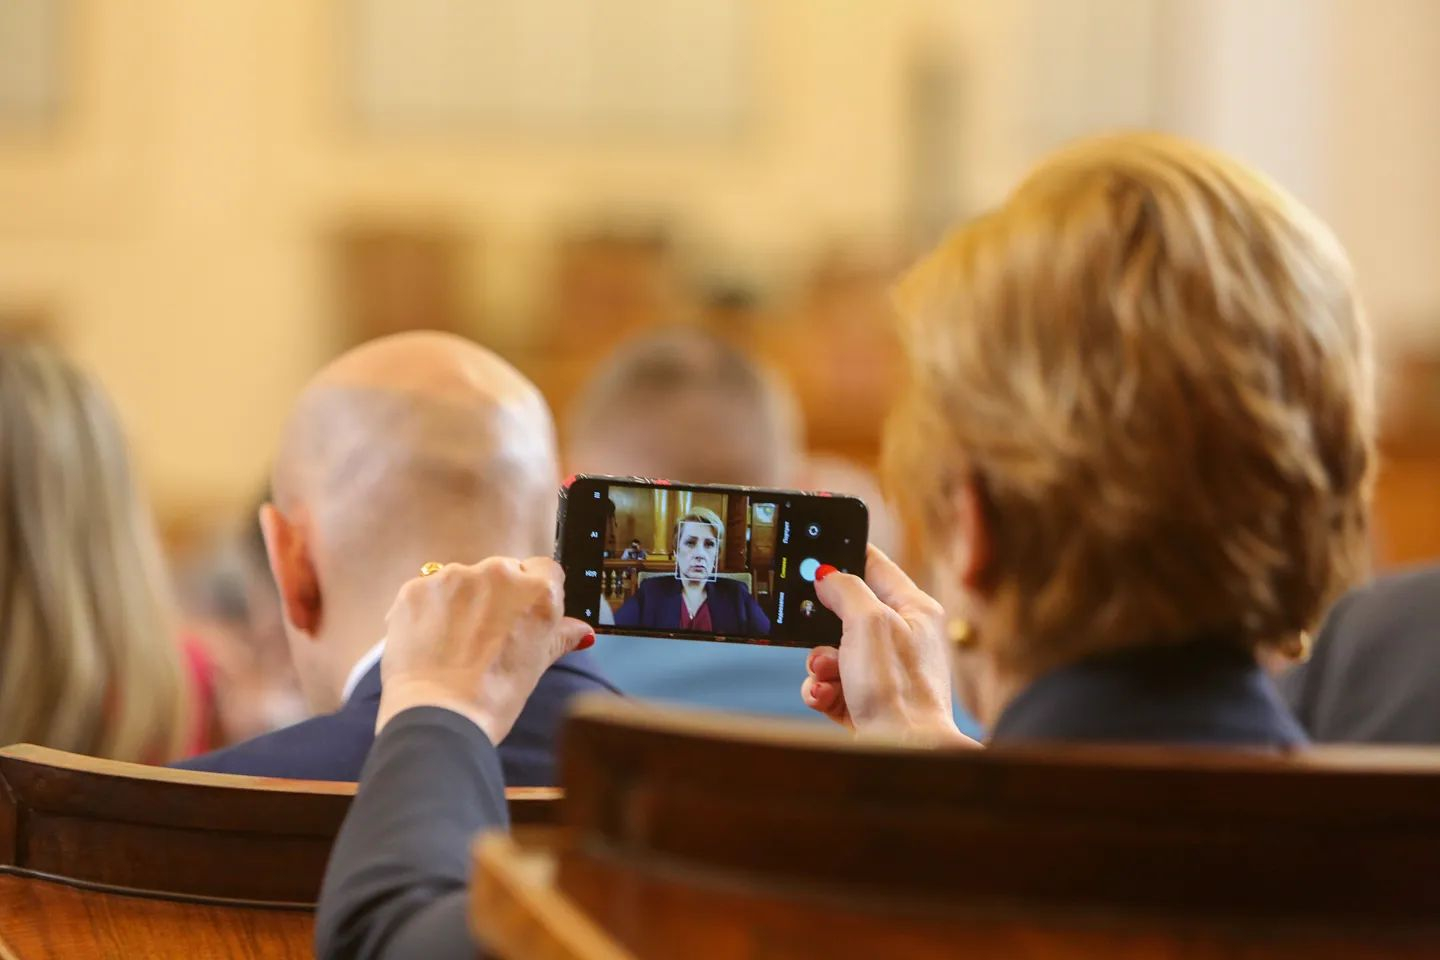 Няма да повярвате за какво ползва телефона си Елена Гунчева от "Възраждане" в парламента СНИМКА